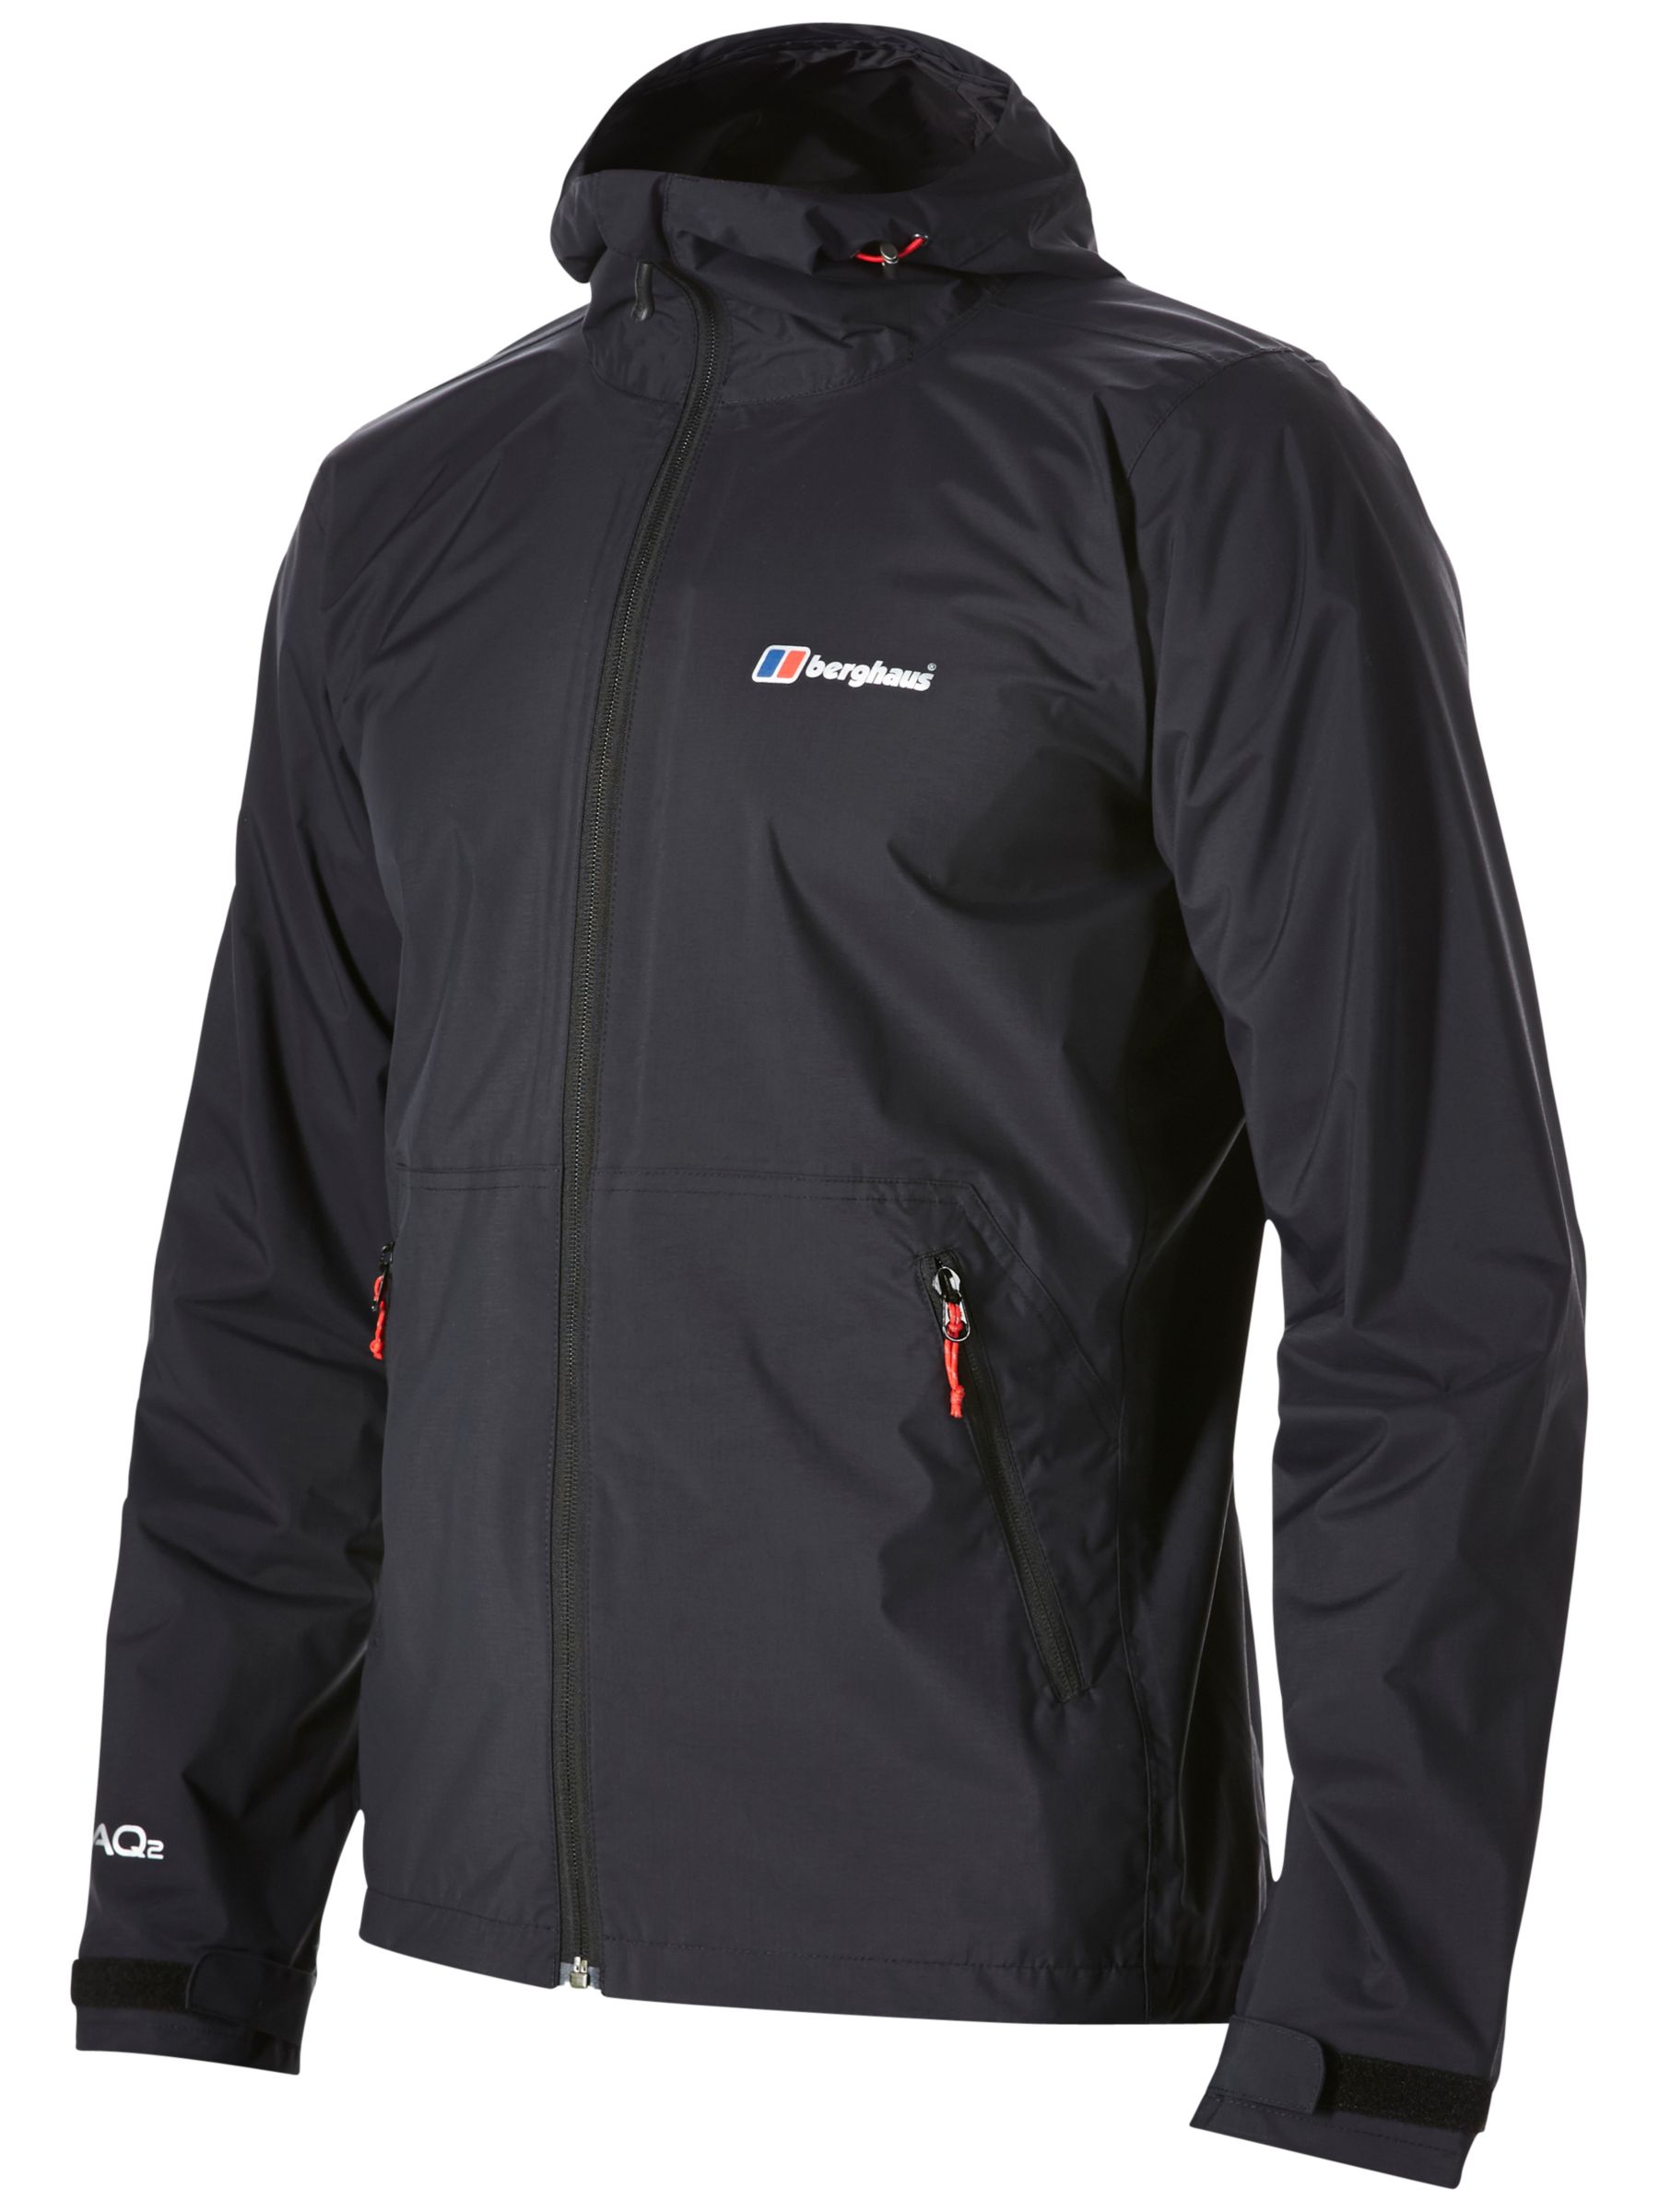 Berghaus Stormcloud Waterproof Men's Jacket, Black, L